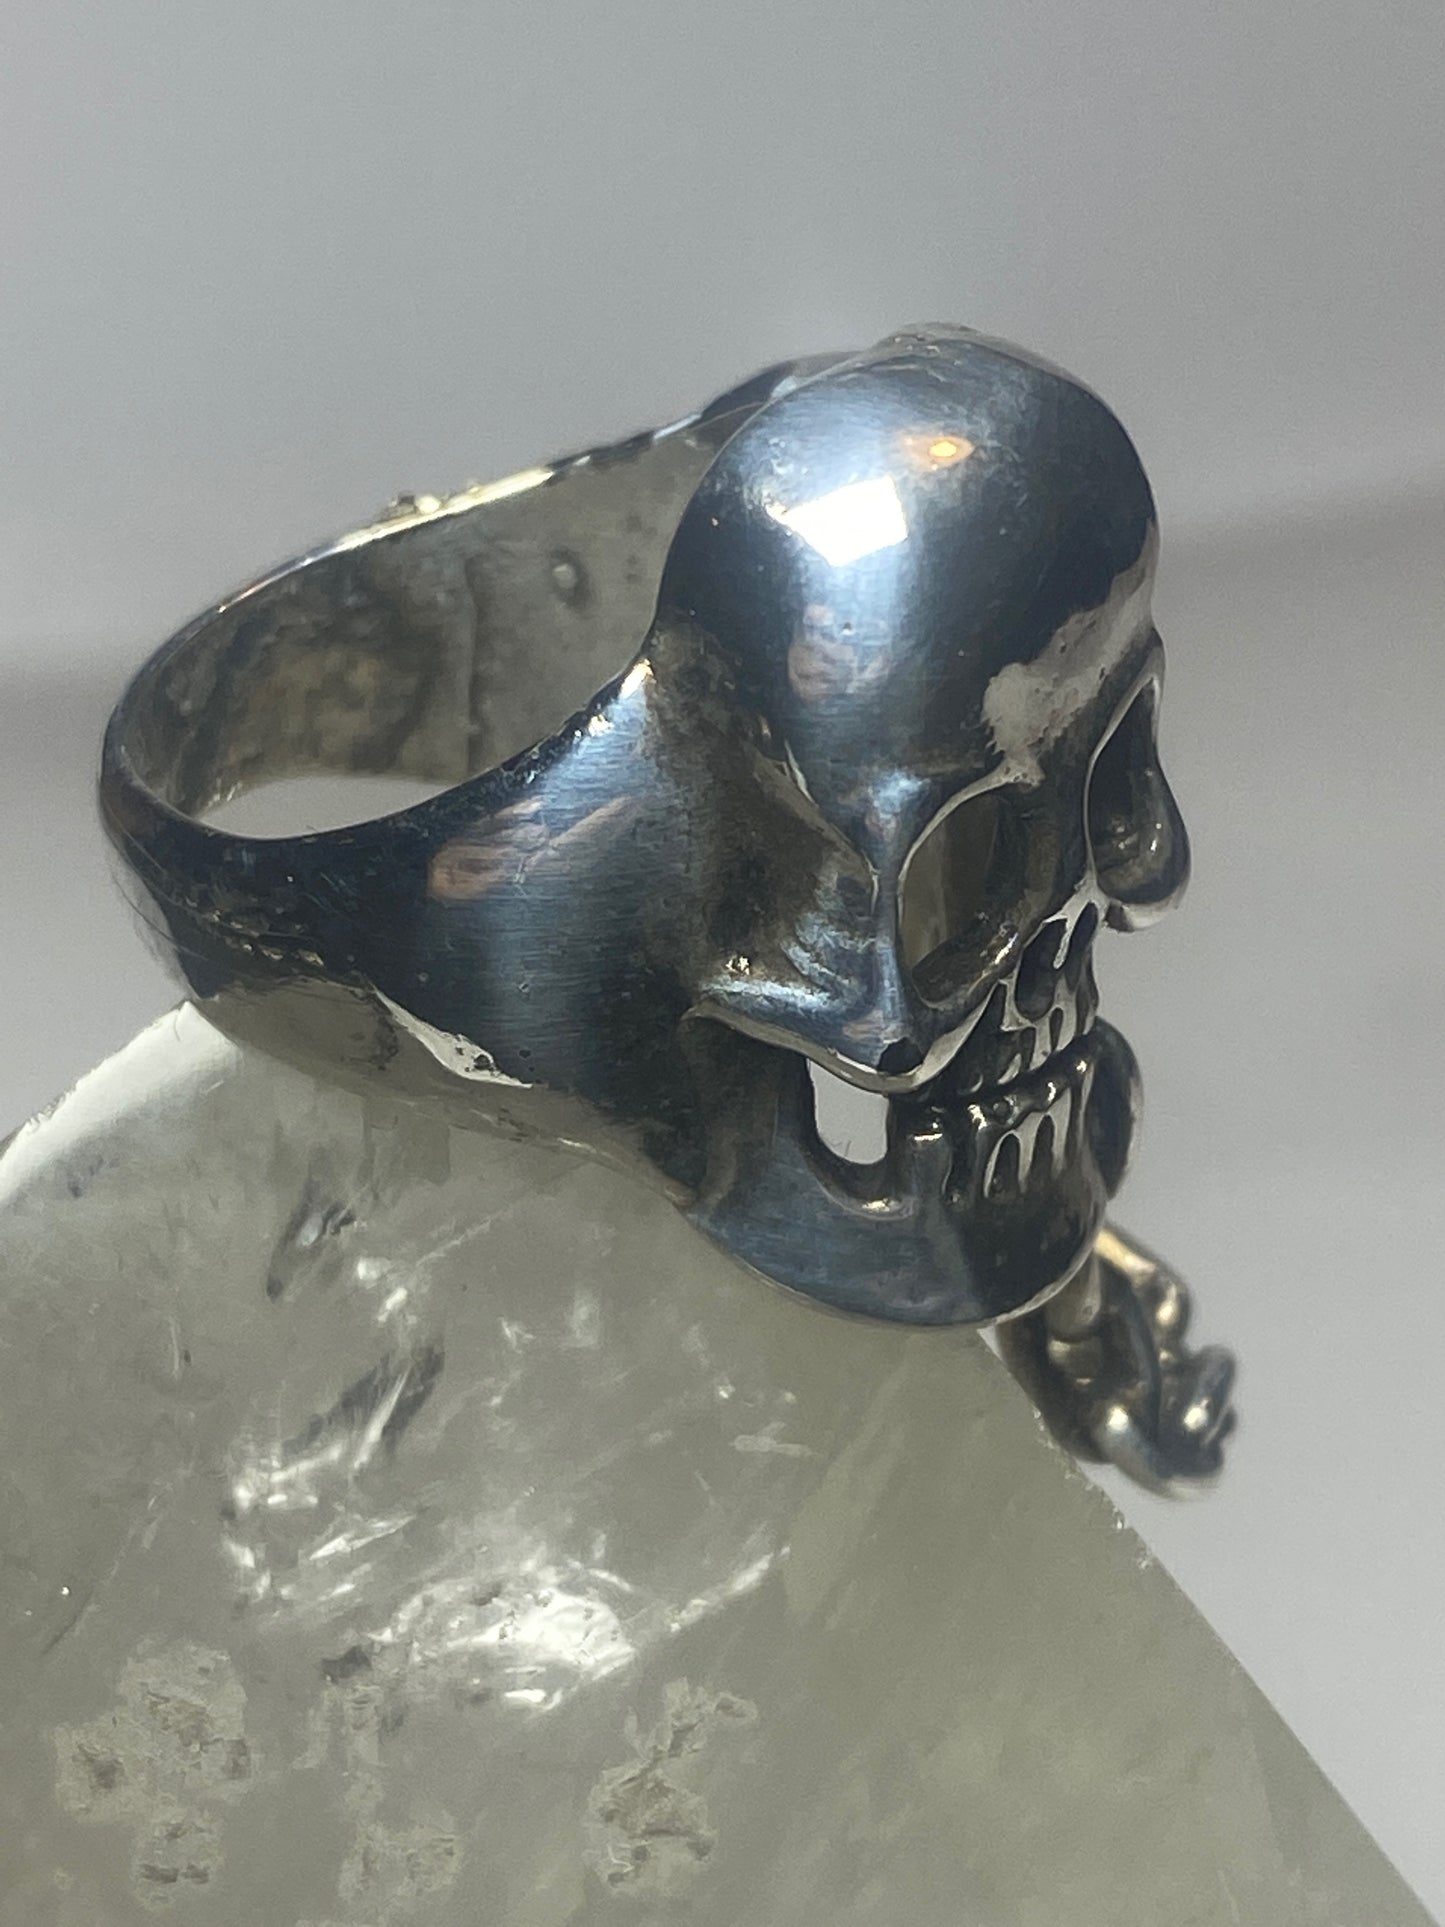 Skull ring double skulls chain biker sterling silver women men